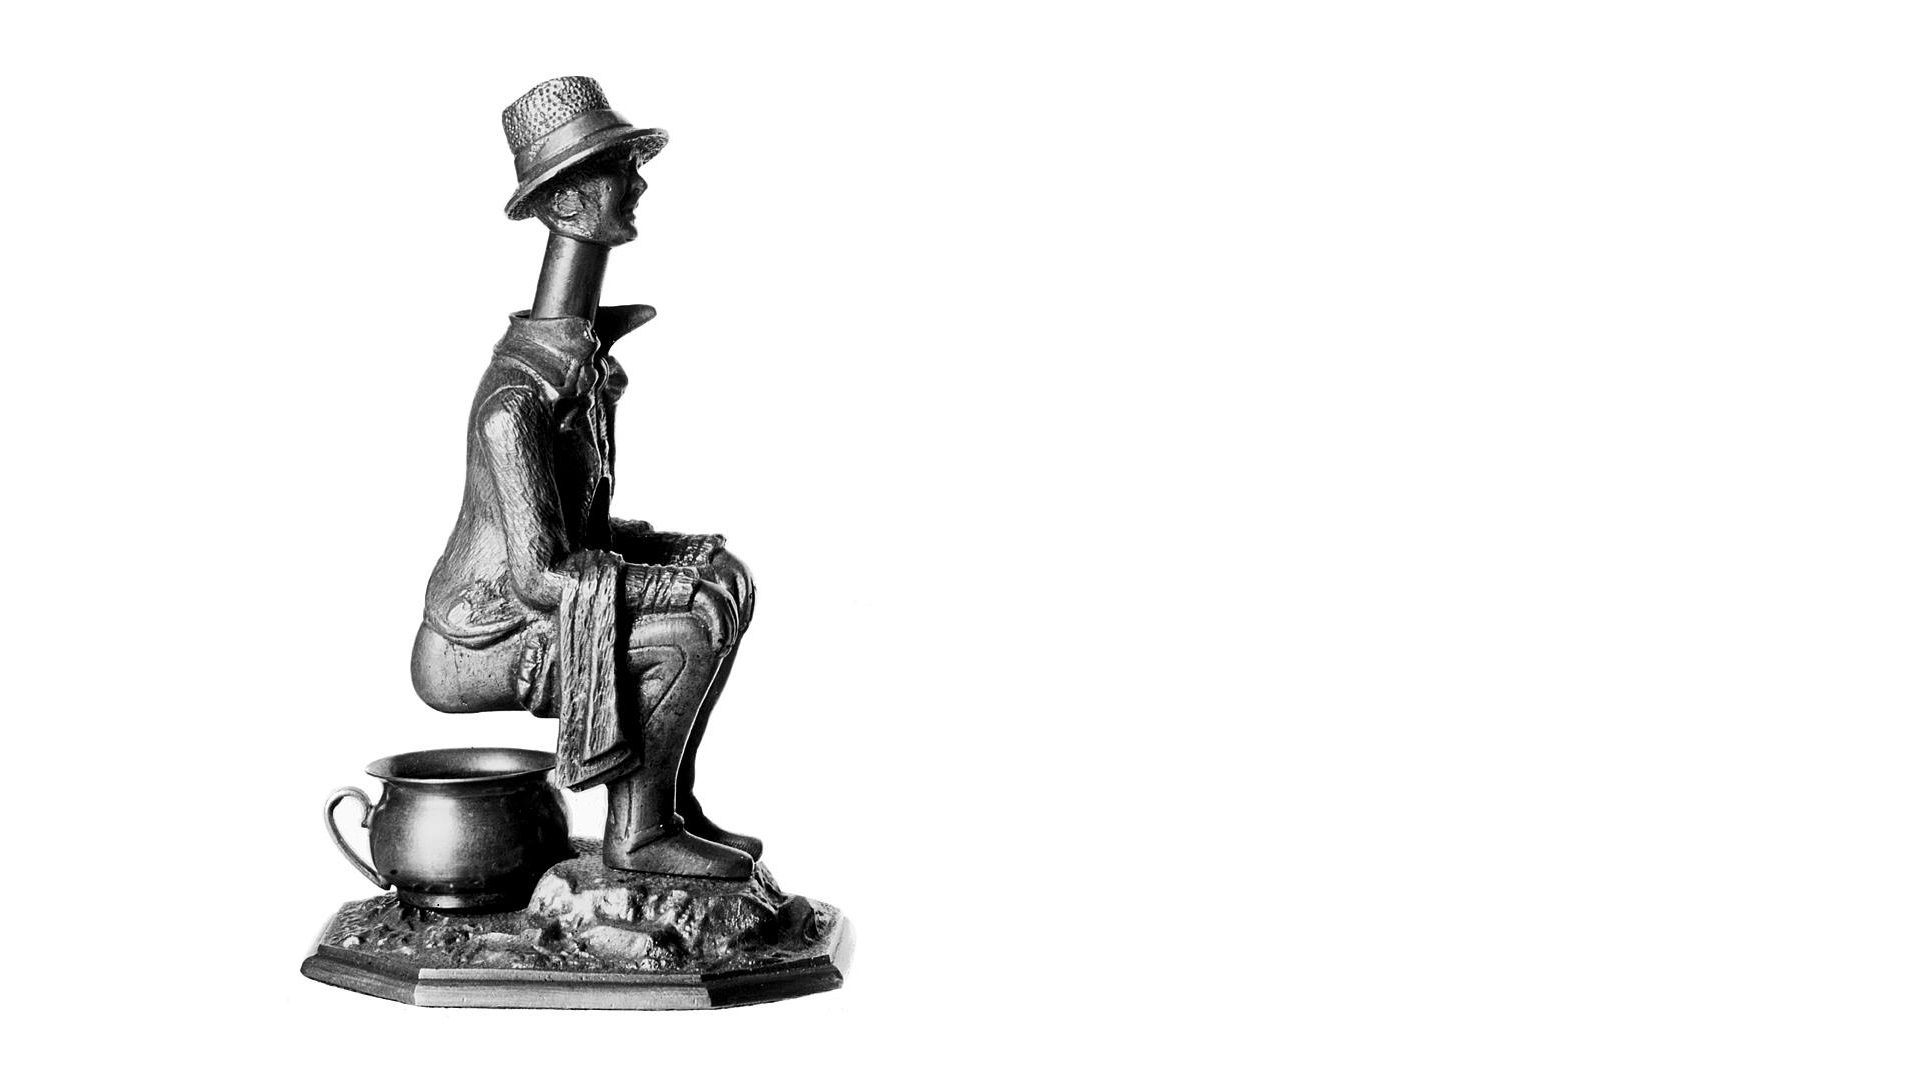 En metallfigurin föreställande en man med hög hatt som sitter på en potta. Den används för att snoppa cigarrer.